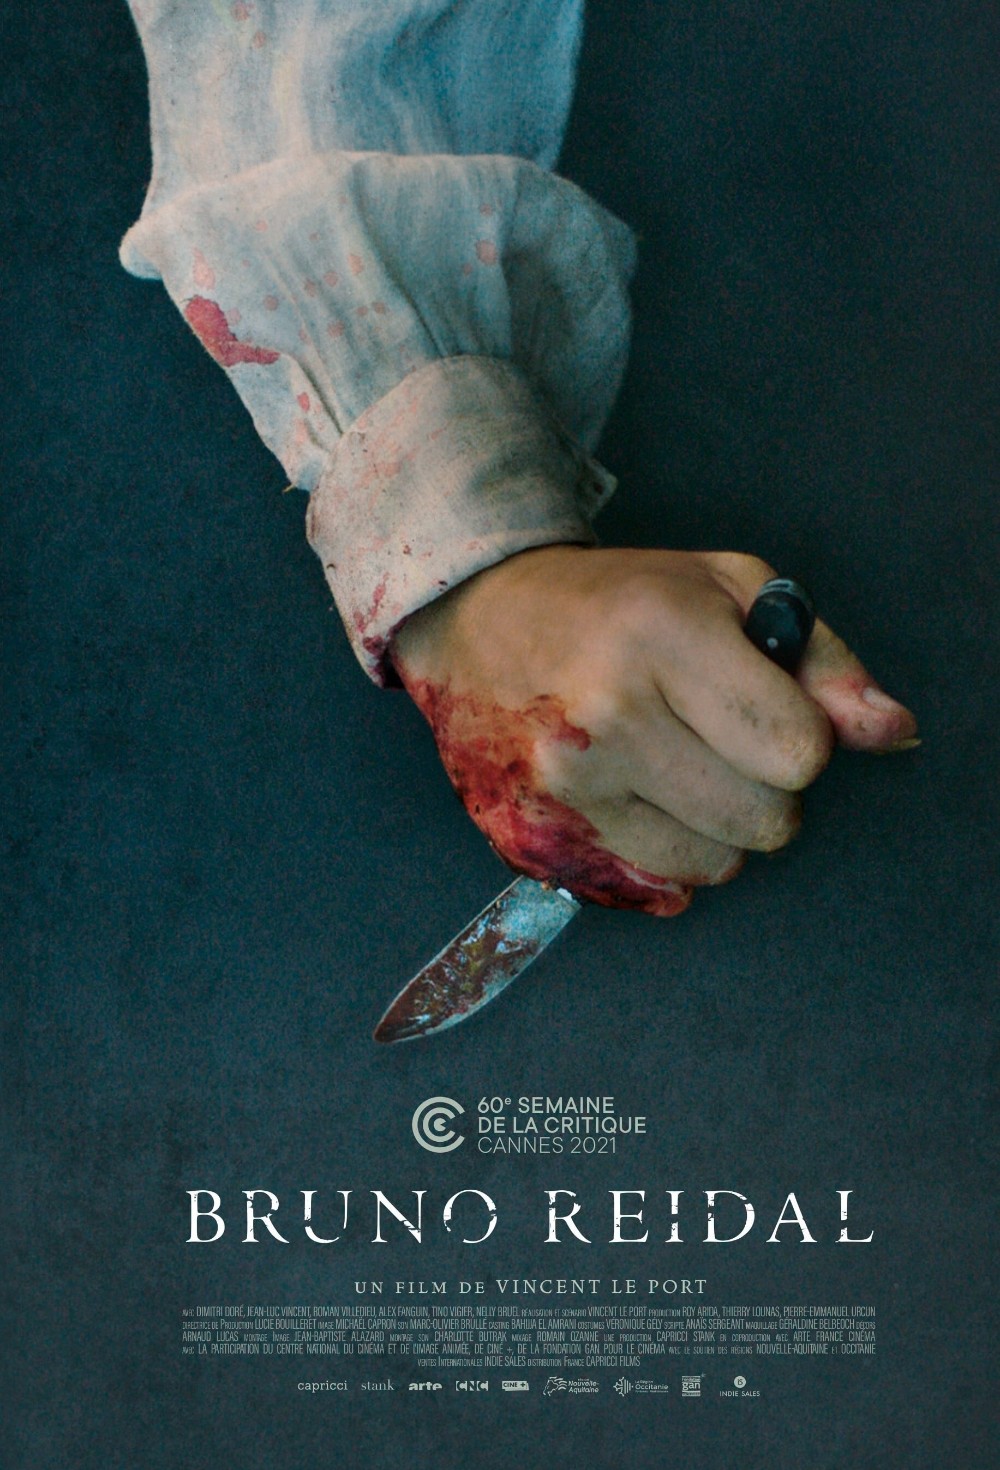 Bruno Reidal, confession d'un meurtrier